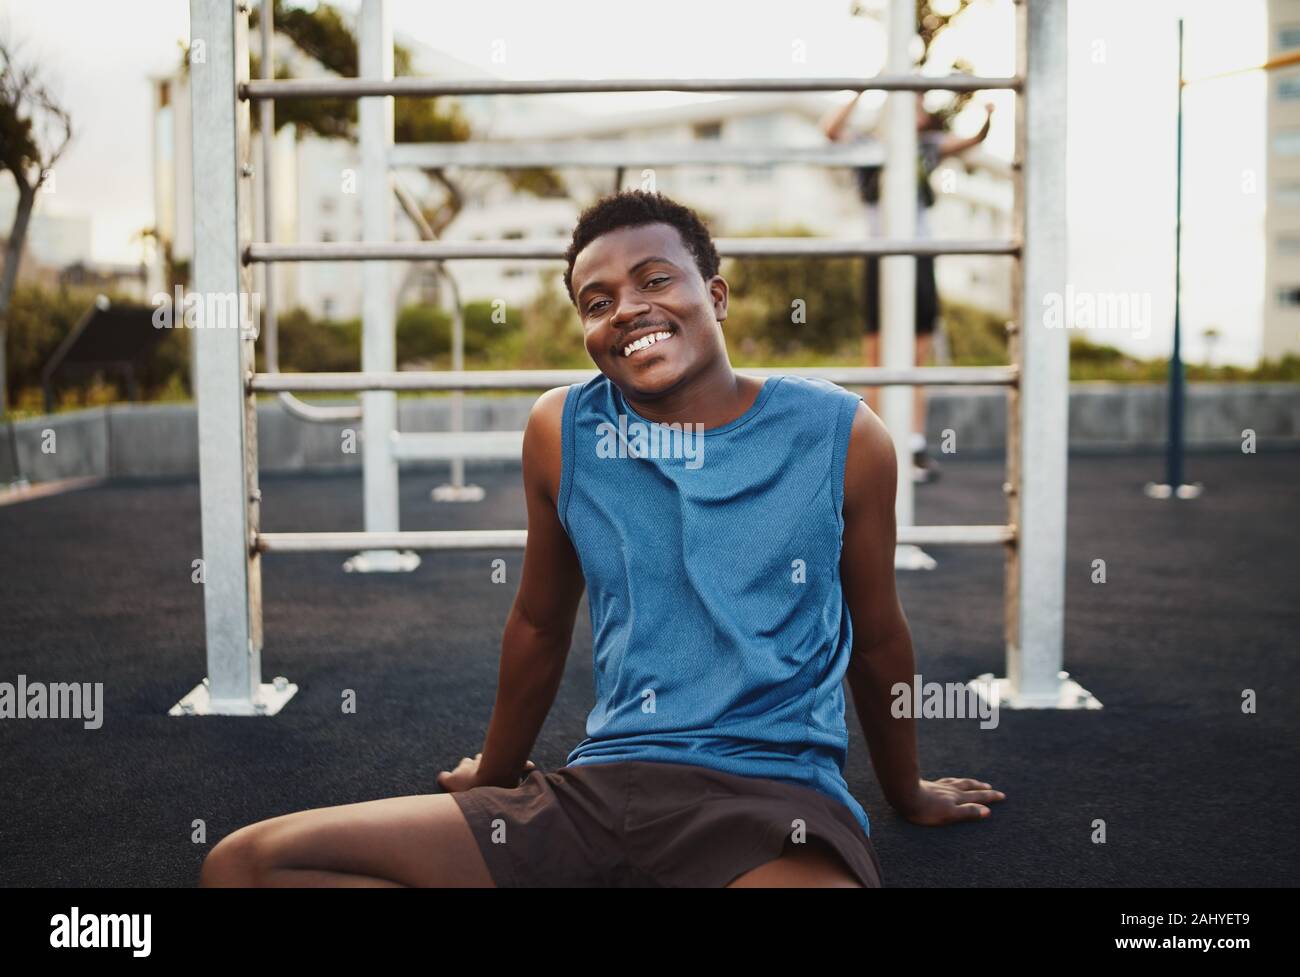 Ritratto di un giovane sorridente americano africano atleta maschio relax dopo un intenso allenamento in palestra esterna park Foto Stock